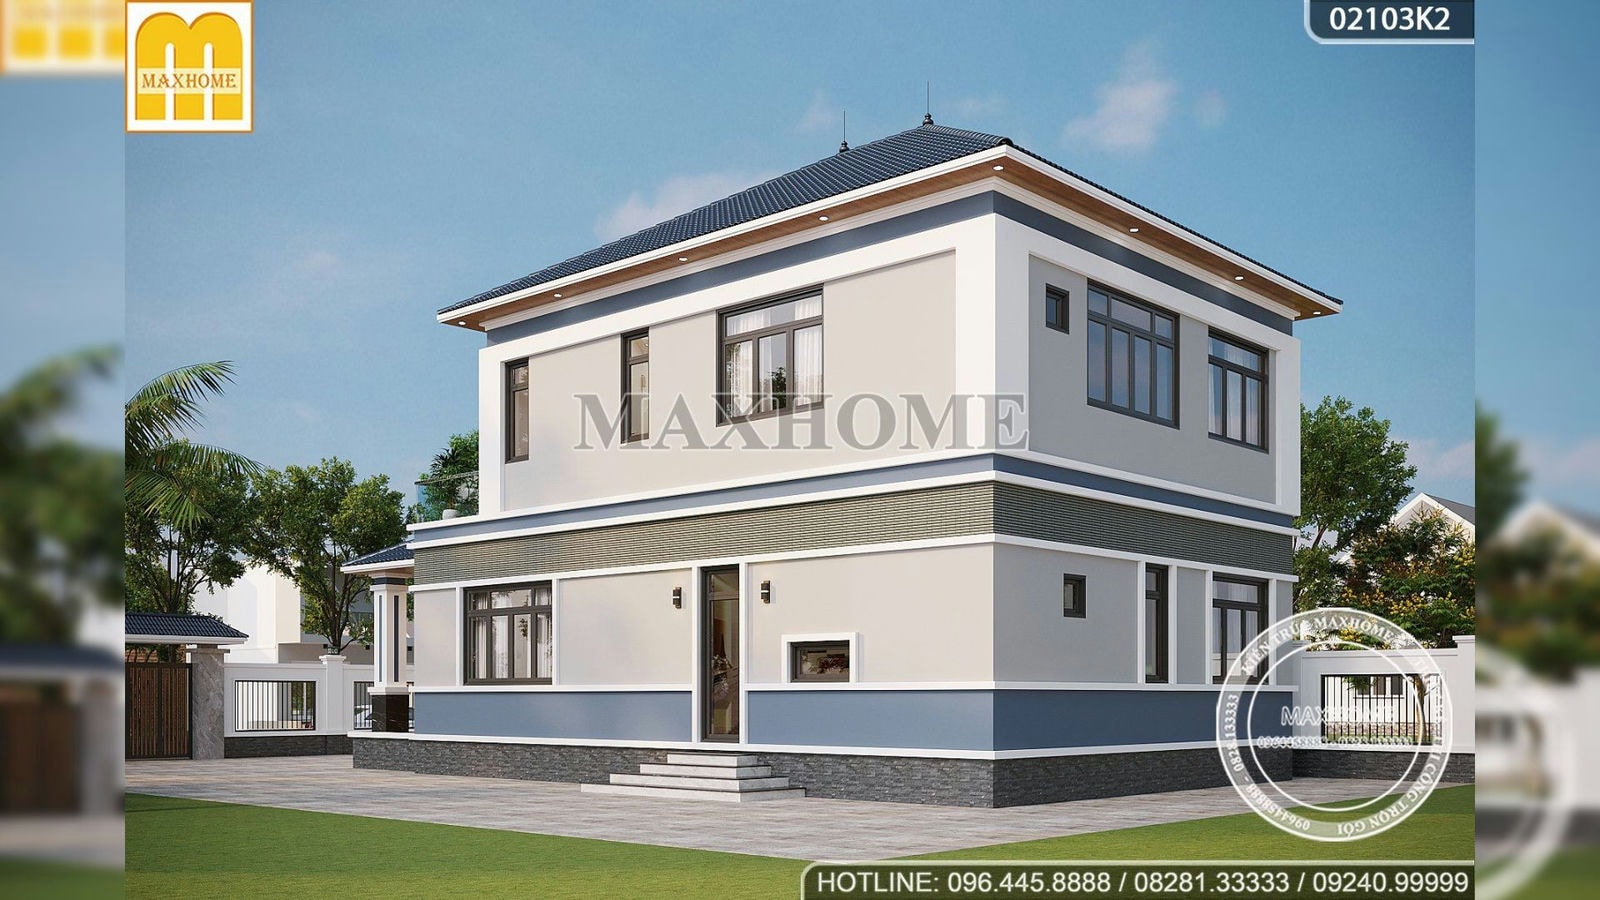 Maxhome thiết kế nhà mái Nhật 2 tầng hiện đại tại Hưng Yên | MH01691